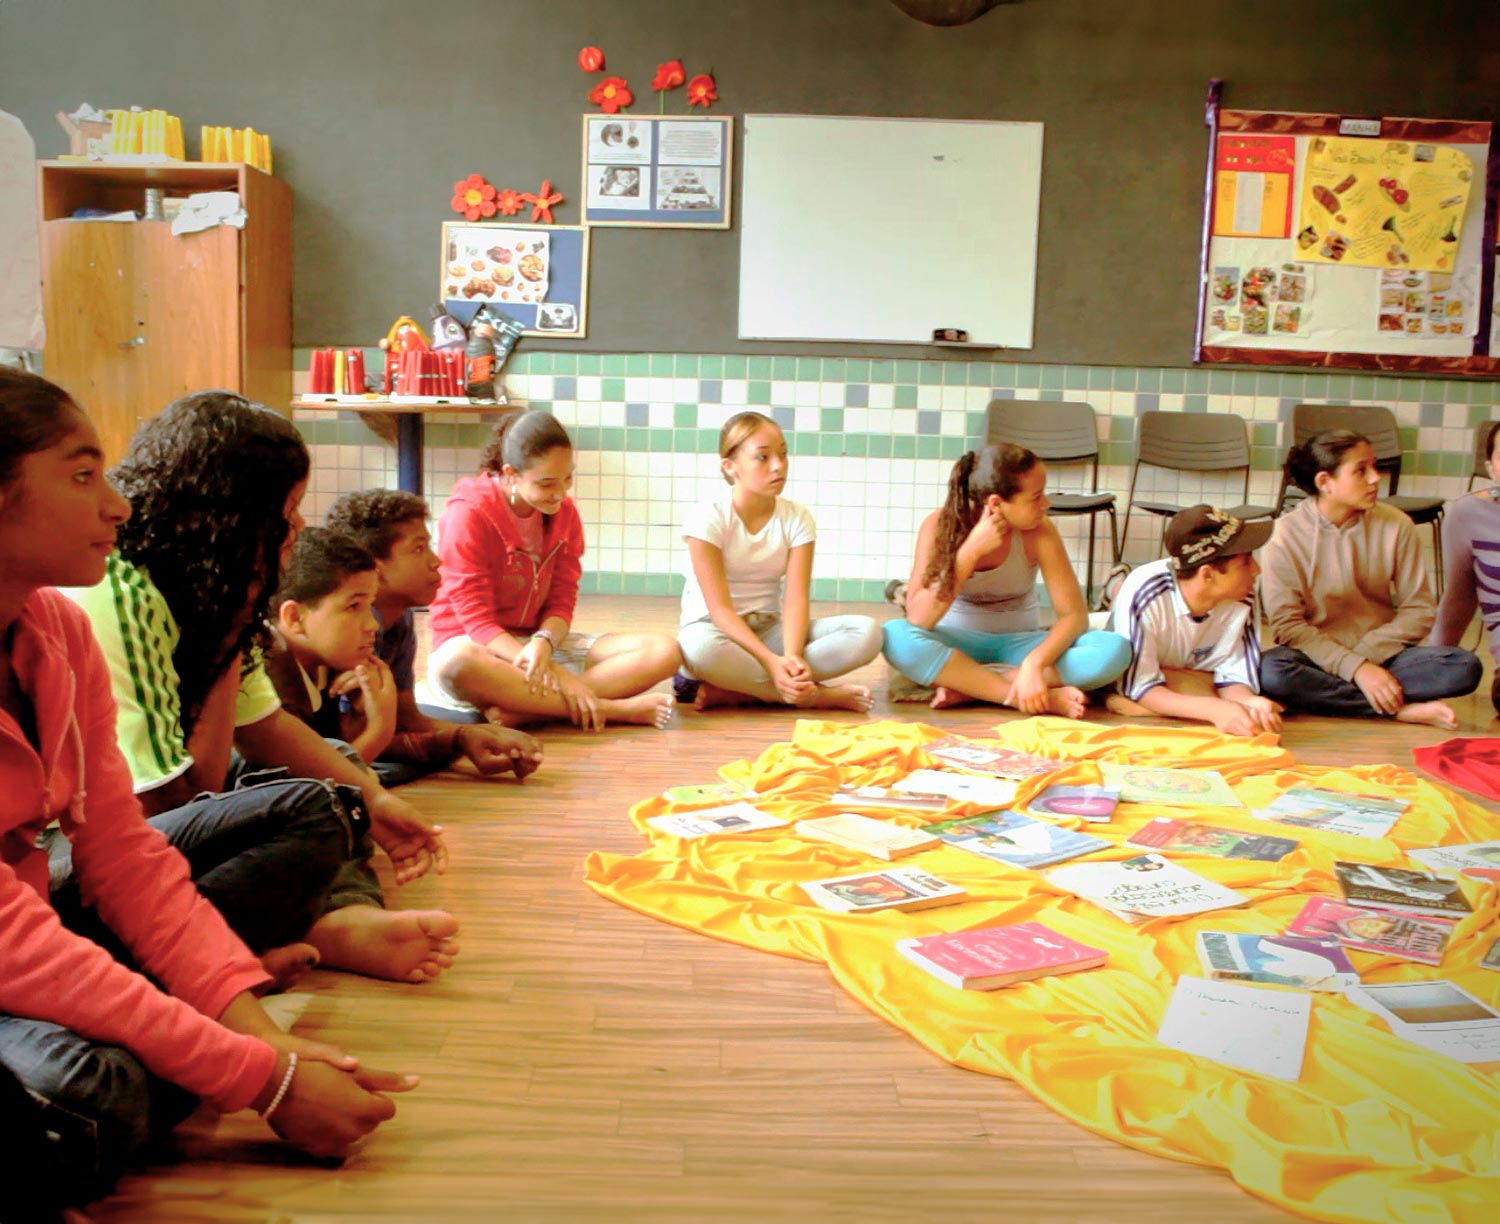 Os alunos de uma escola apoiada pelo fundo Iniciativa Comum no Brasil sentam-se em círculo em uma sala de aula, voltados para a direita, com um cobertor repleto de papéis entre eles.